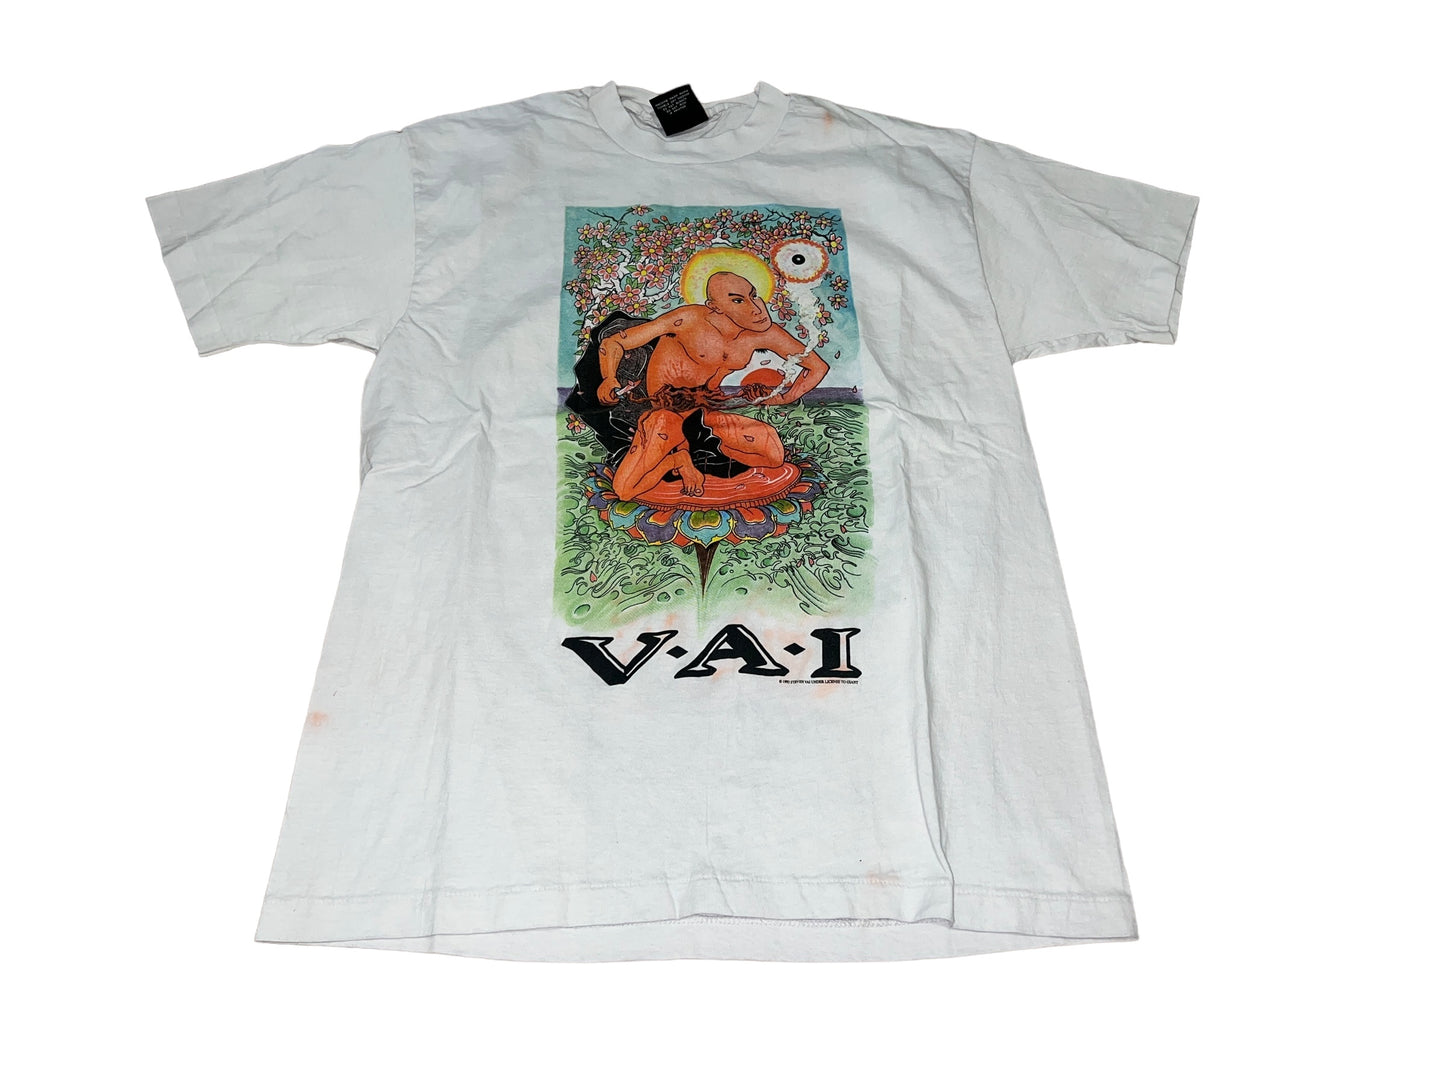 Vintage 1993 Steven Val T-Shirt